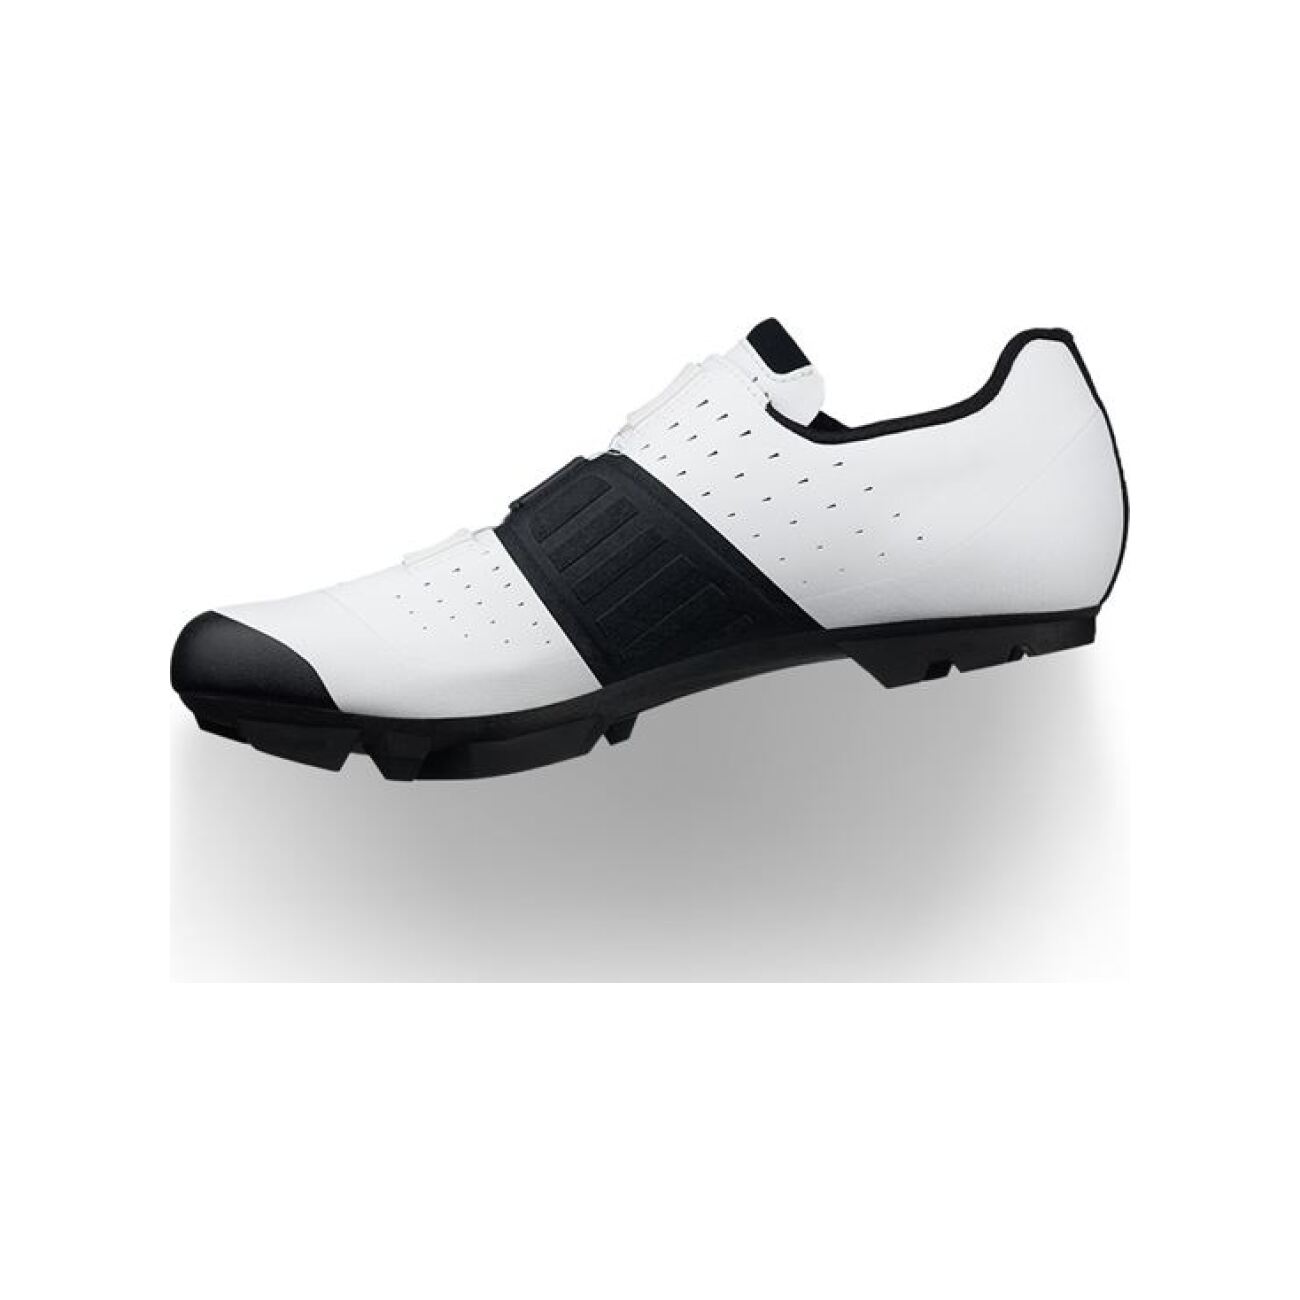 FIZIK Kerékpáros Cipő - VENTO X3 OVERCURVE - Fehér/fekete